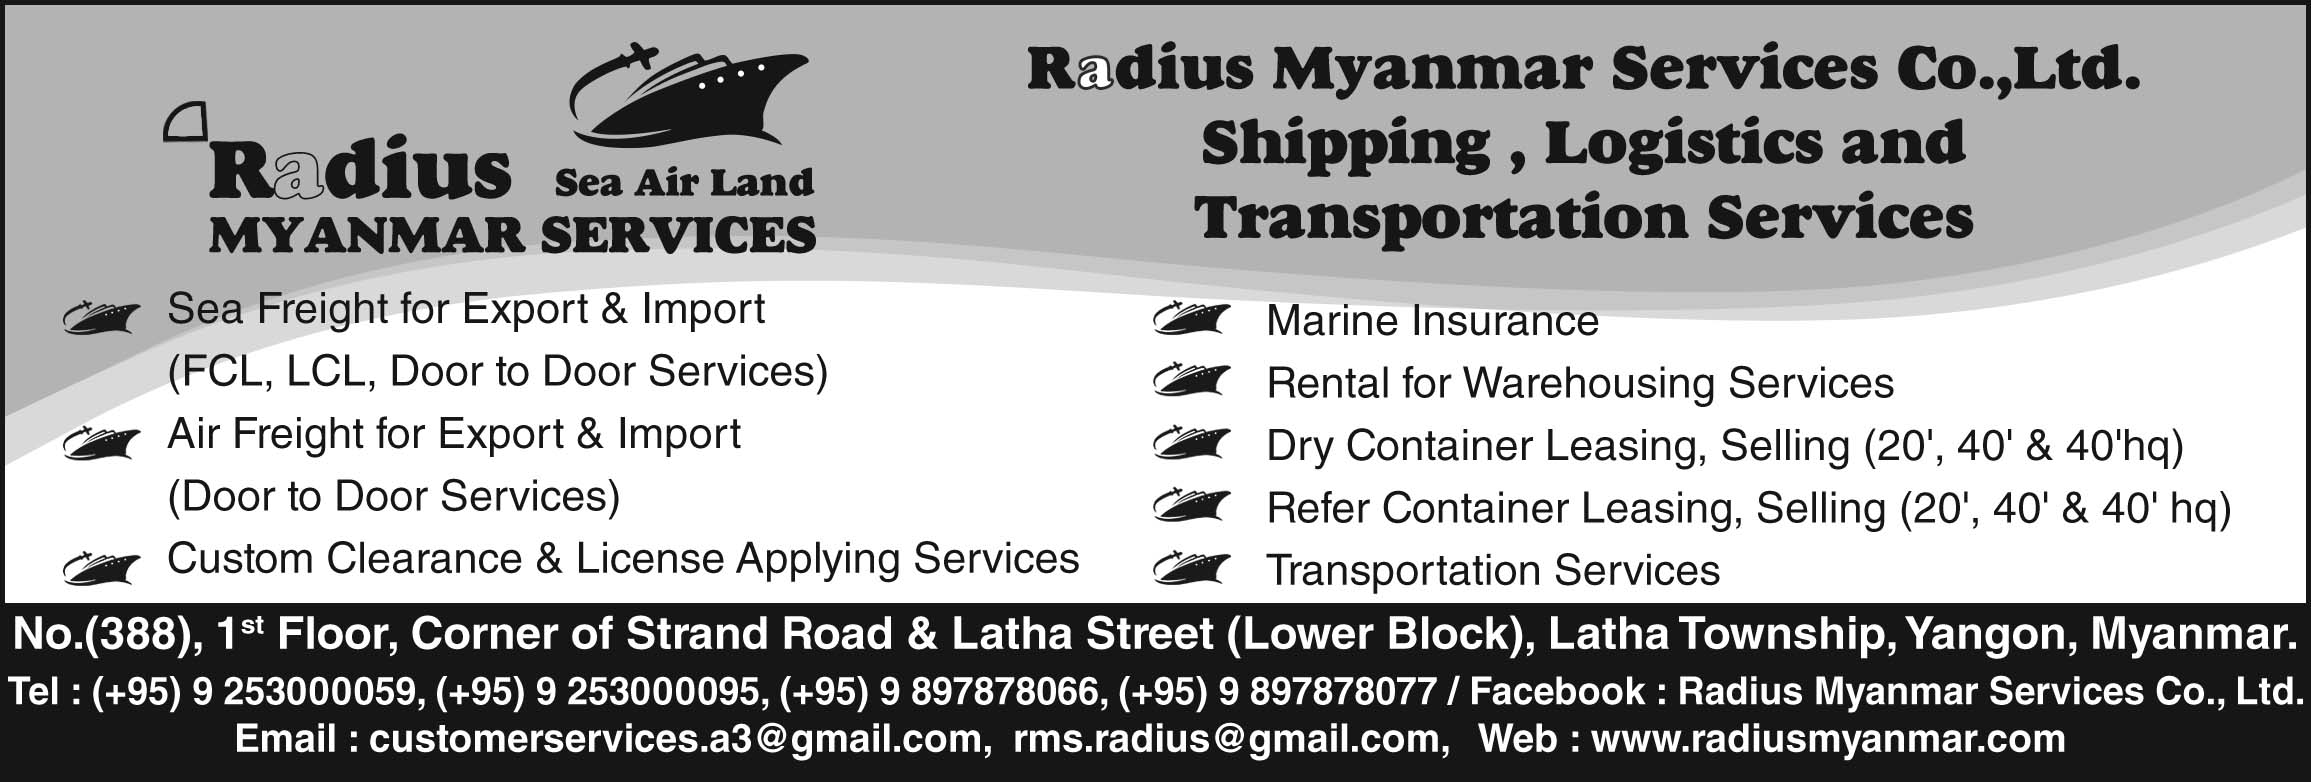 Radius Myanmar Services Co., Ltd.